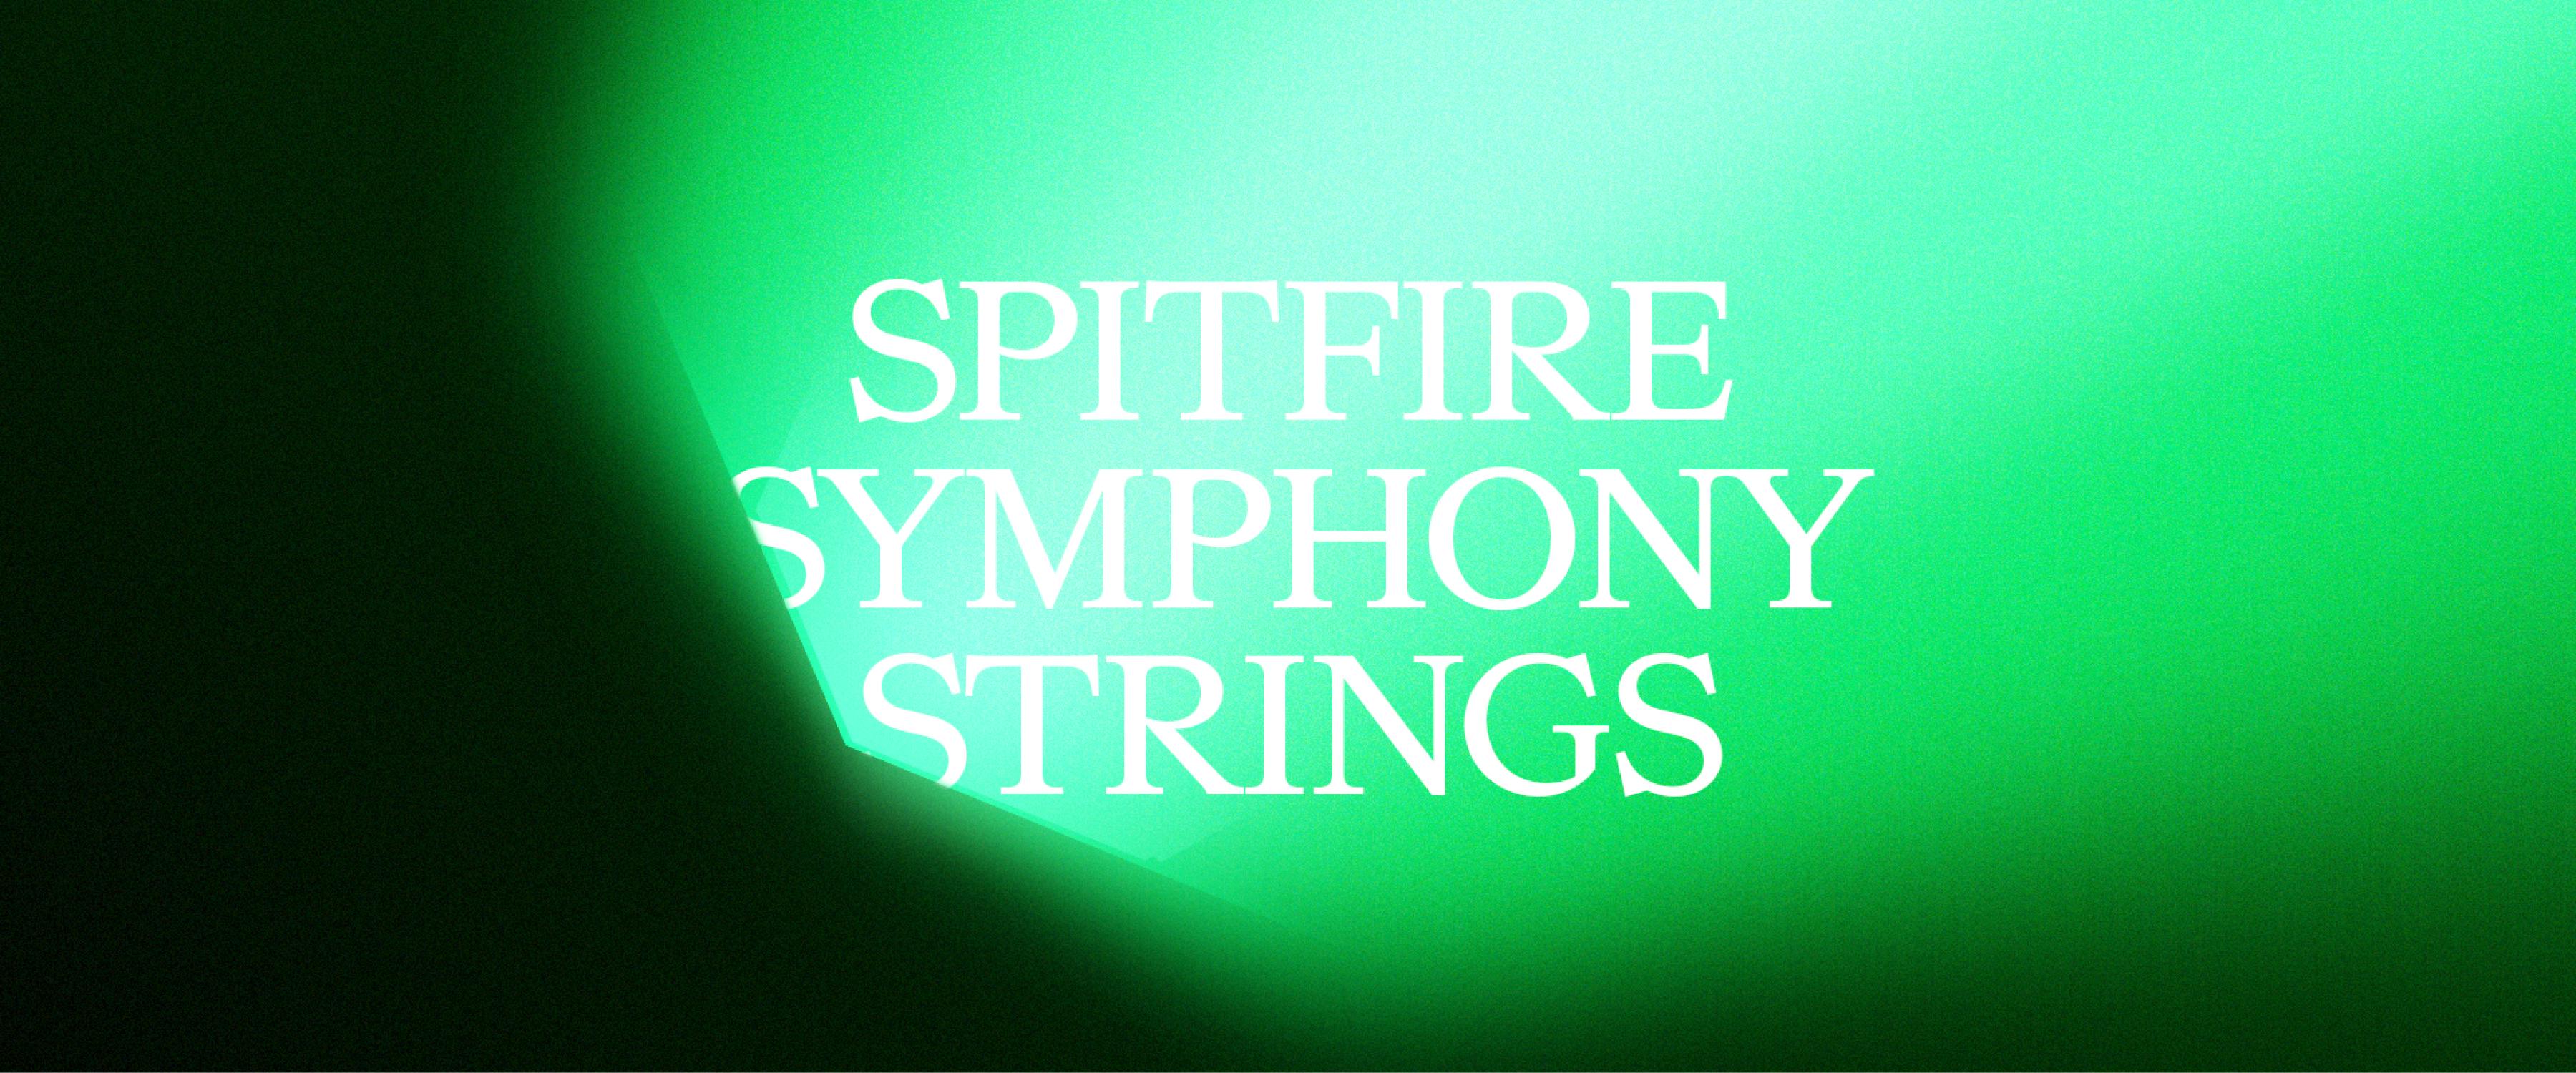 Spitfire Symphony Strings